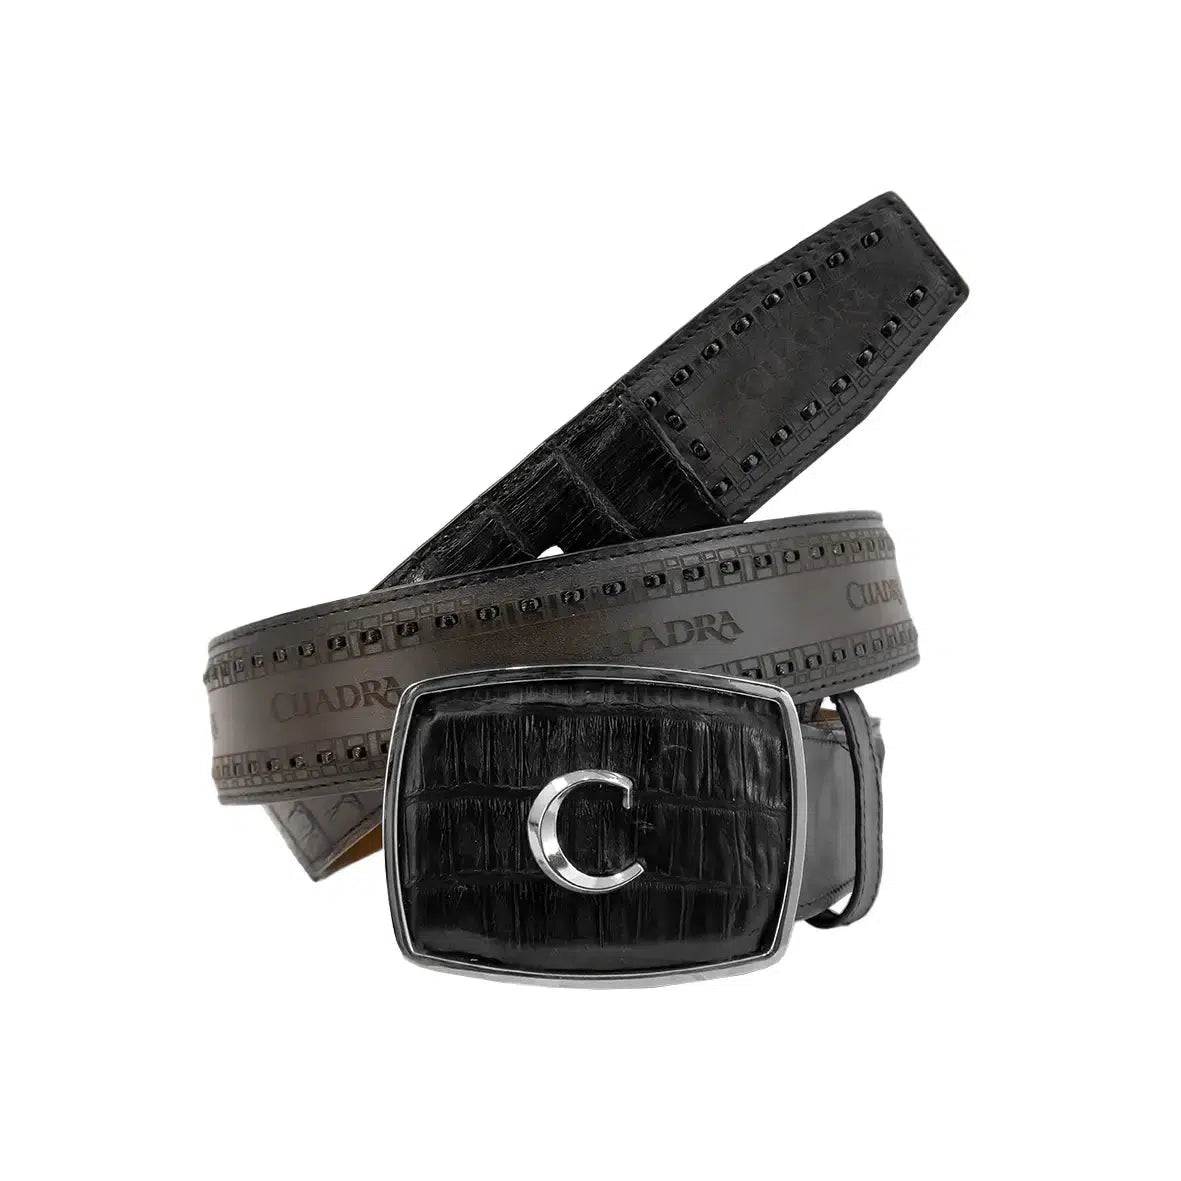 CV397FC - Cuadra black cowboy western fuscus leather belt for men.